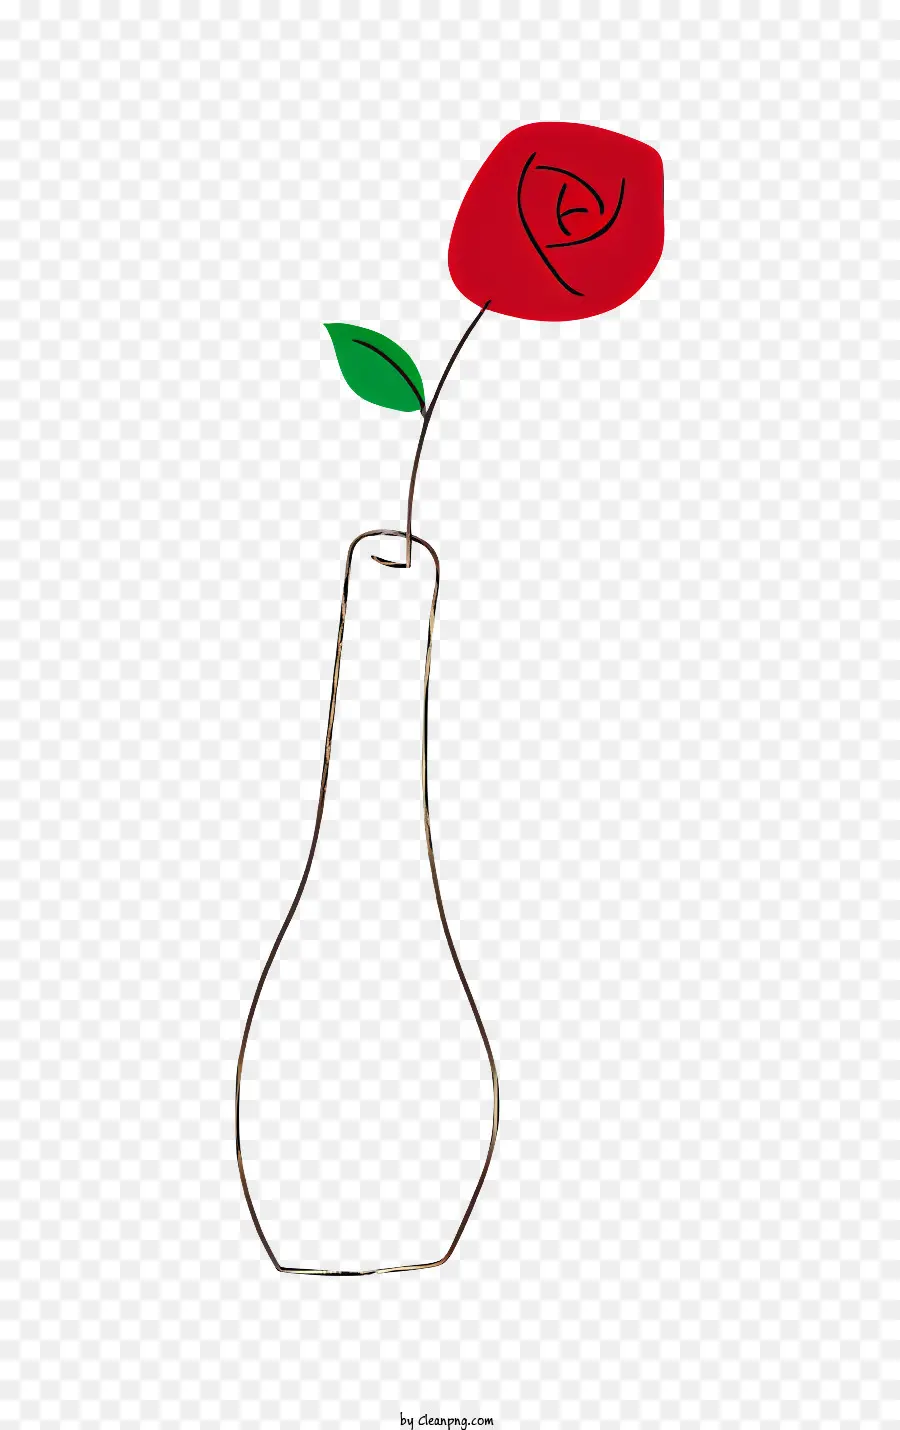 rosa rossa - Rosa rossa in vaso su sfondo nero